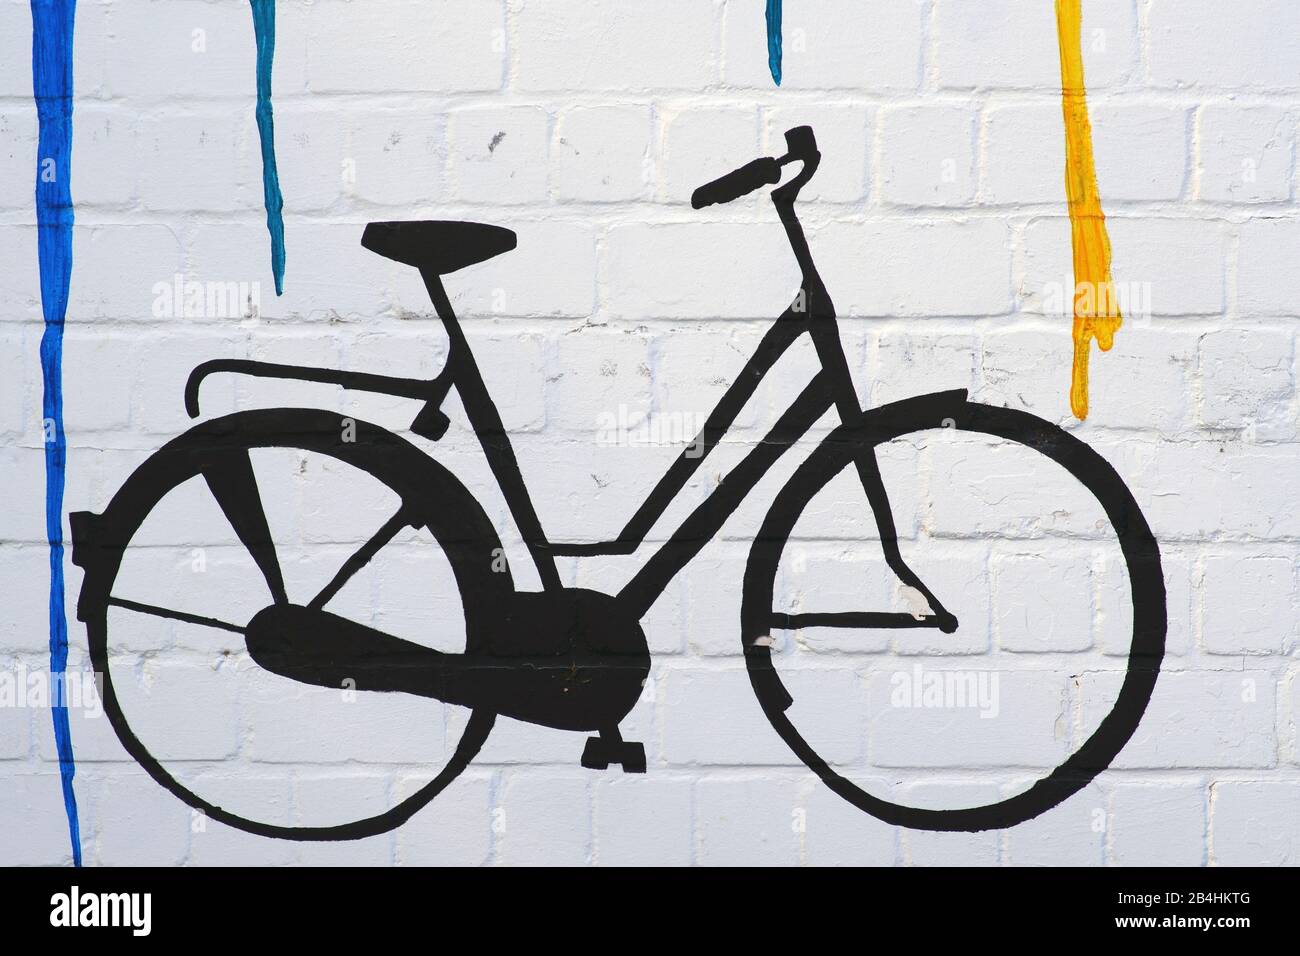 Le dessin et l'esquisse d'un vélo sur un mur avec des dégradés de couleurs. Banque D'Images